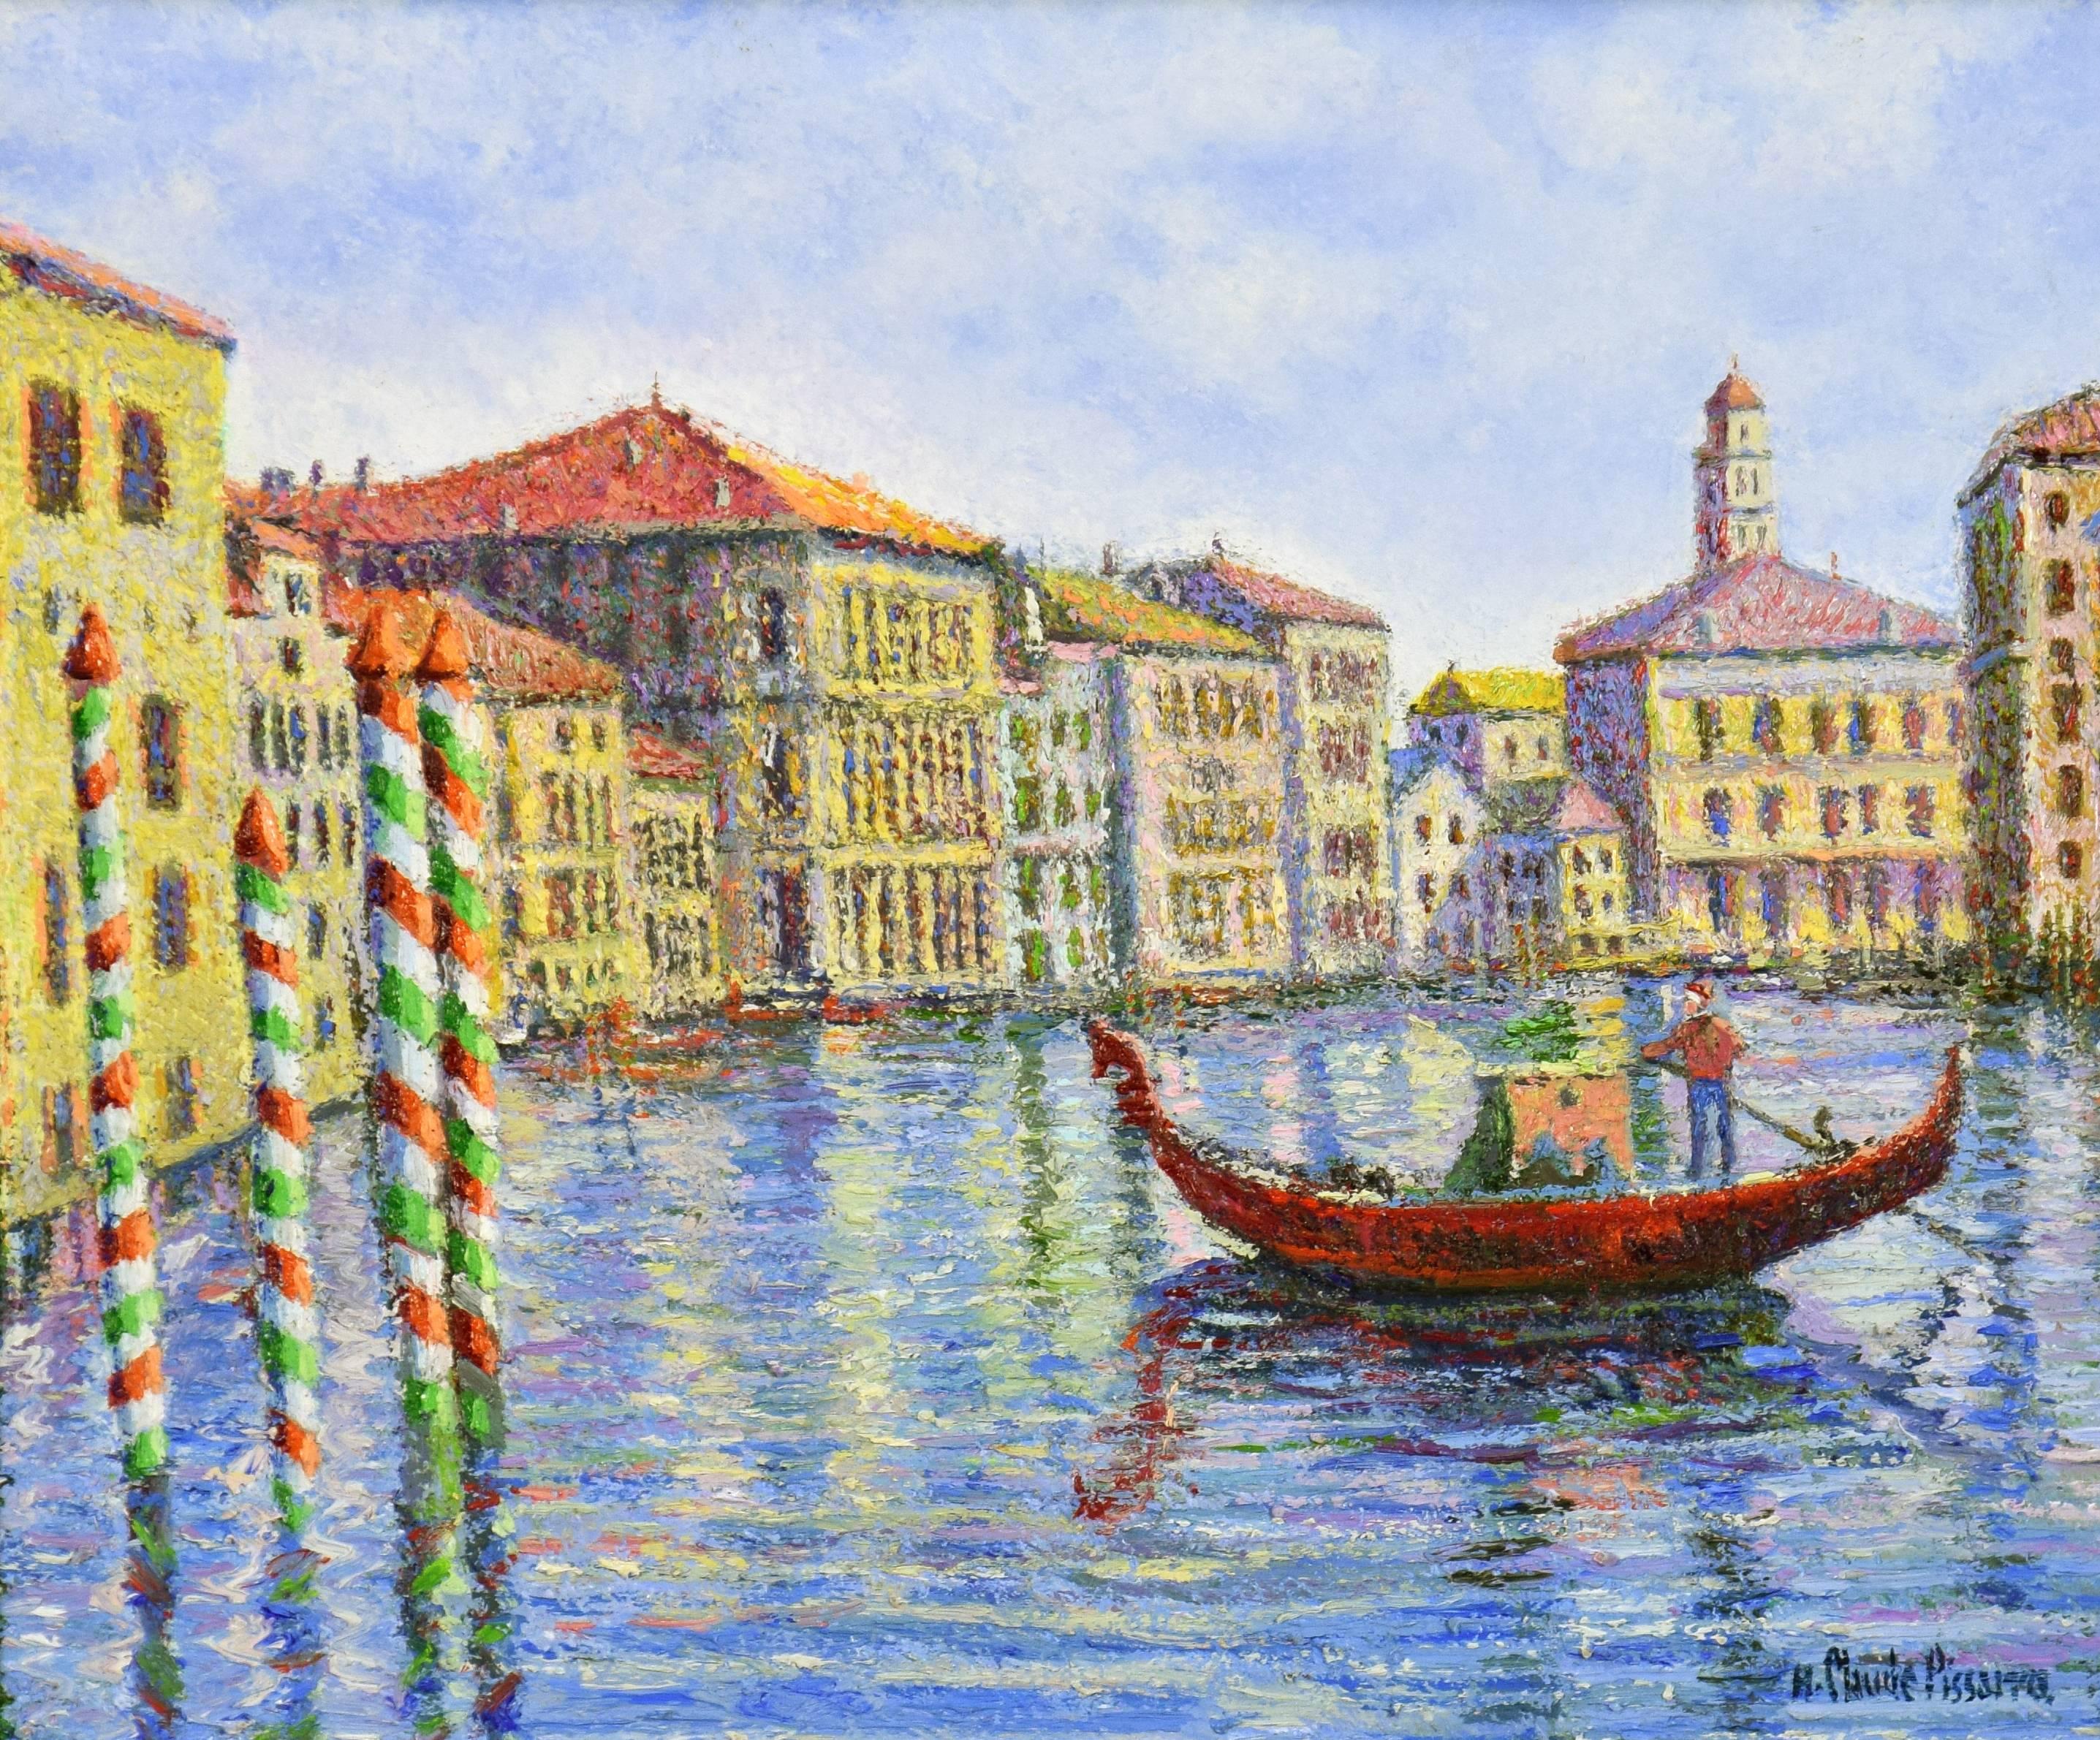 Figurative Painting Hughes Claude Pissarro - Crépuscule à Venise par H. CLAUDE PISSARRO - Peinture de style Post-Impressionniste